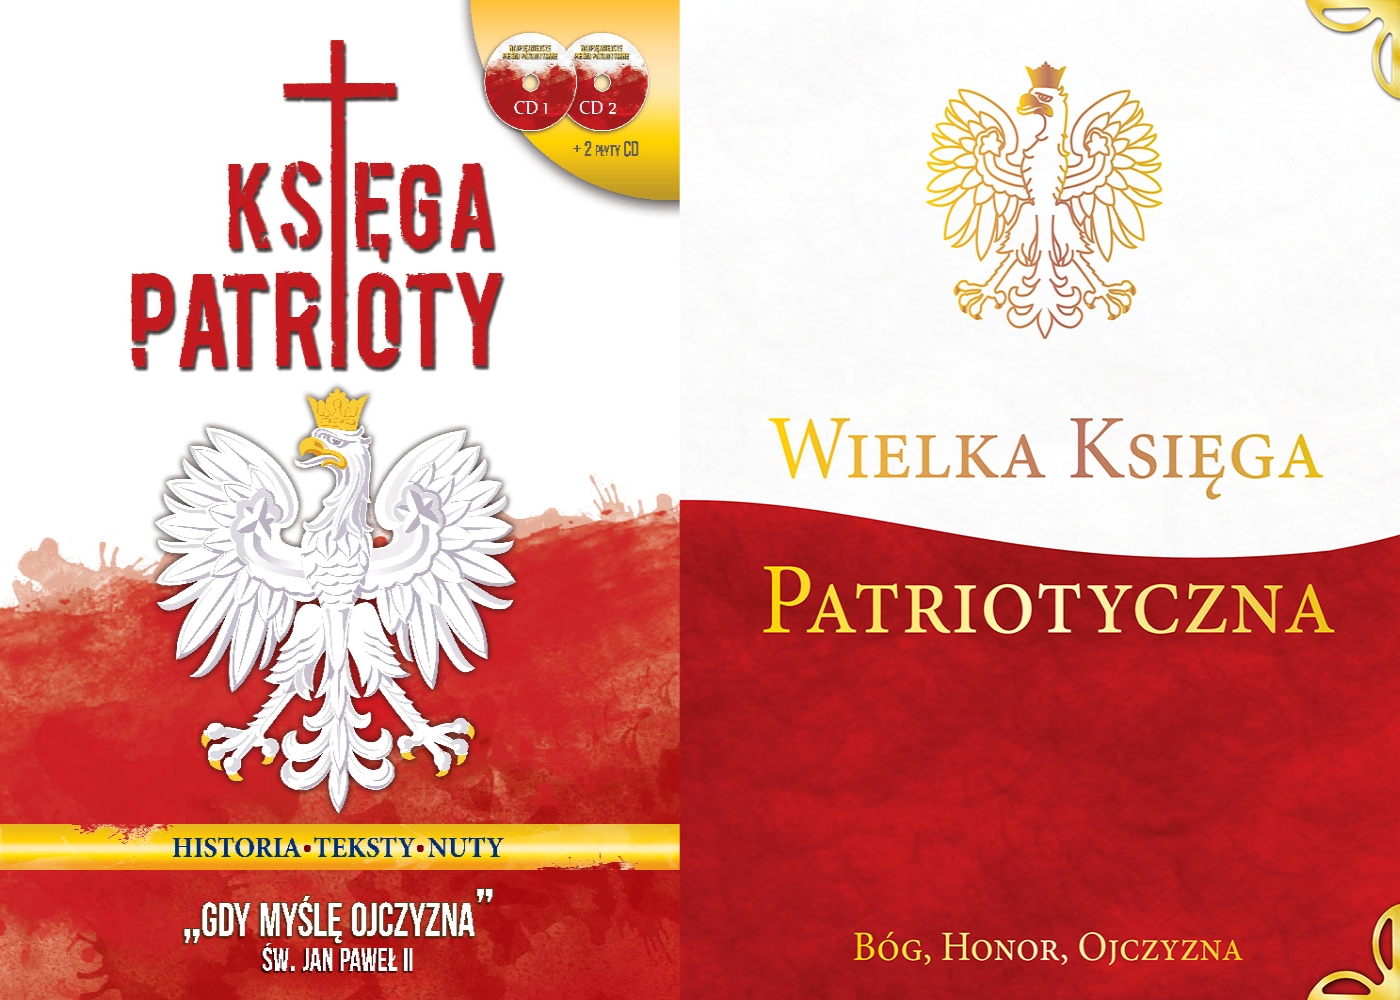 KSIEGA PATRIOTY_WIELKA_KSIEGA_DOBRE_MIEJSCE